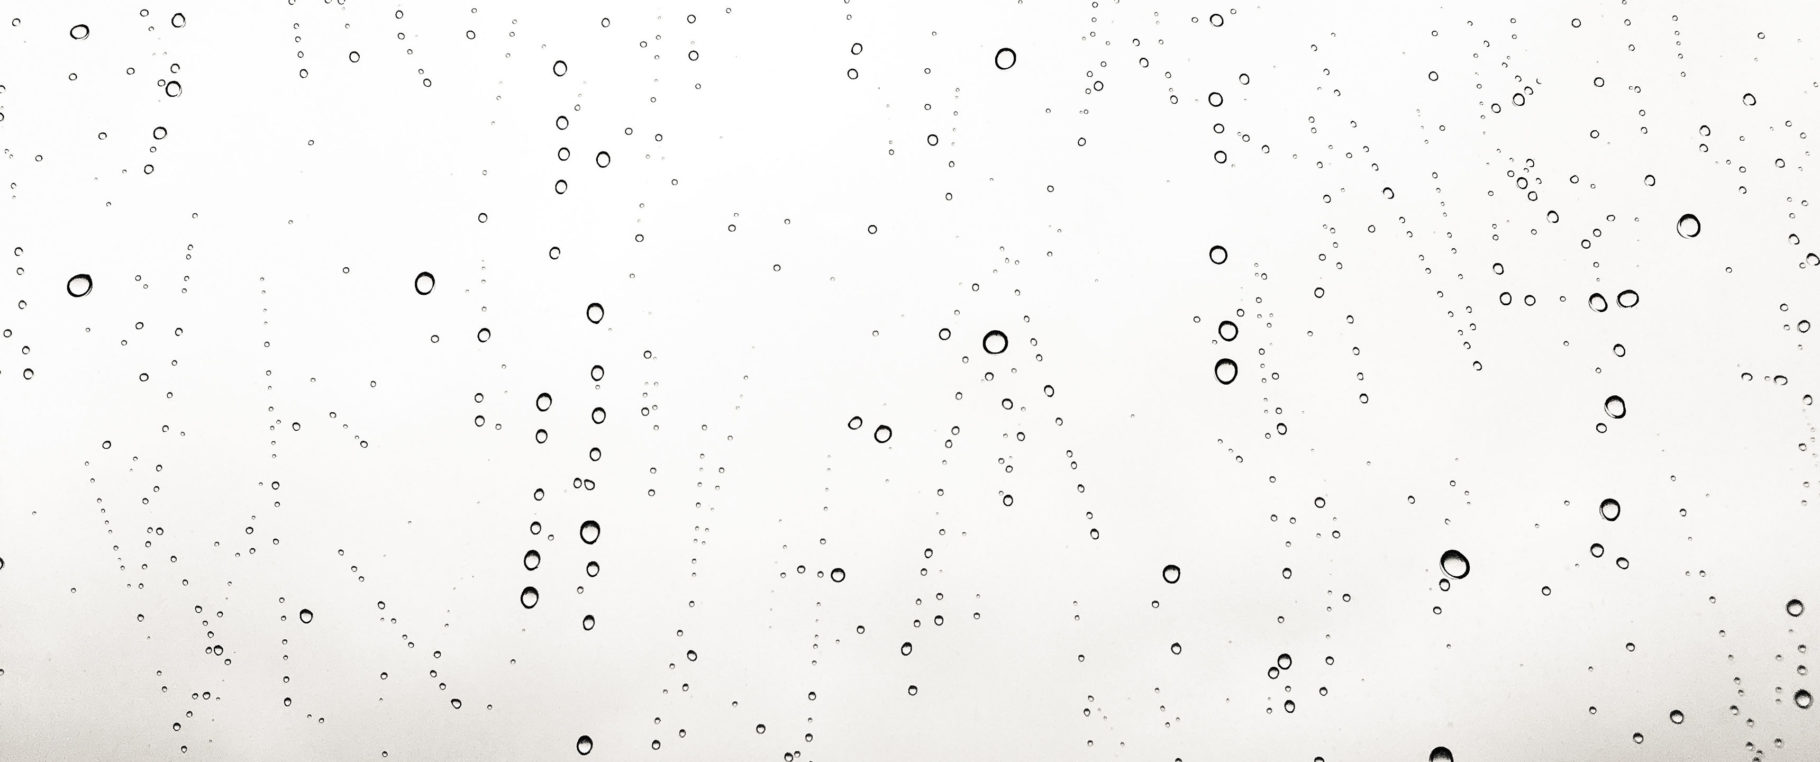 Giọt nước là một trong những chủ đề phổ biến trong nhiếp ảnh, nhưng 3440x1440 Wallpaper sẽ mang đến cho bạn một cảnh tượng khác lạ. Hình ảnh về giọt nước tưởng chừng như đơn giản, nhưng lại nổi bật và tạo nên sự thu hút đối với những người yêu thích nghệ thuật.